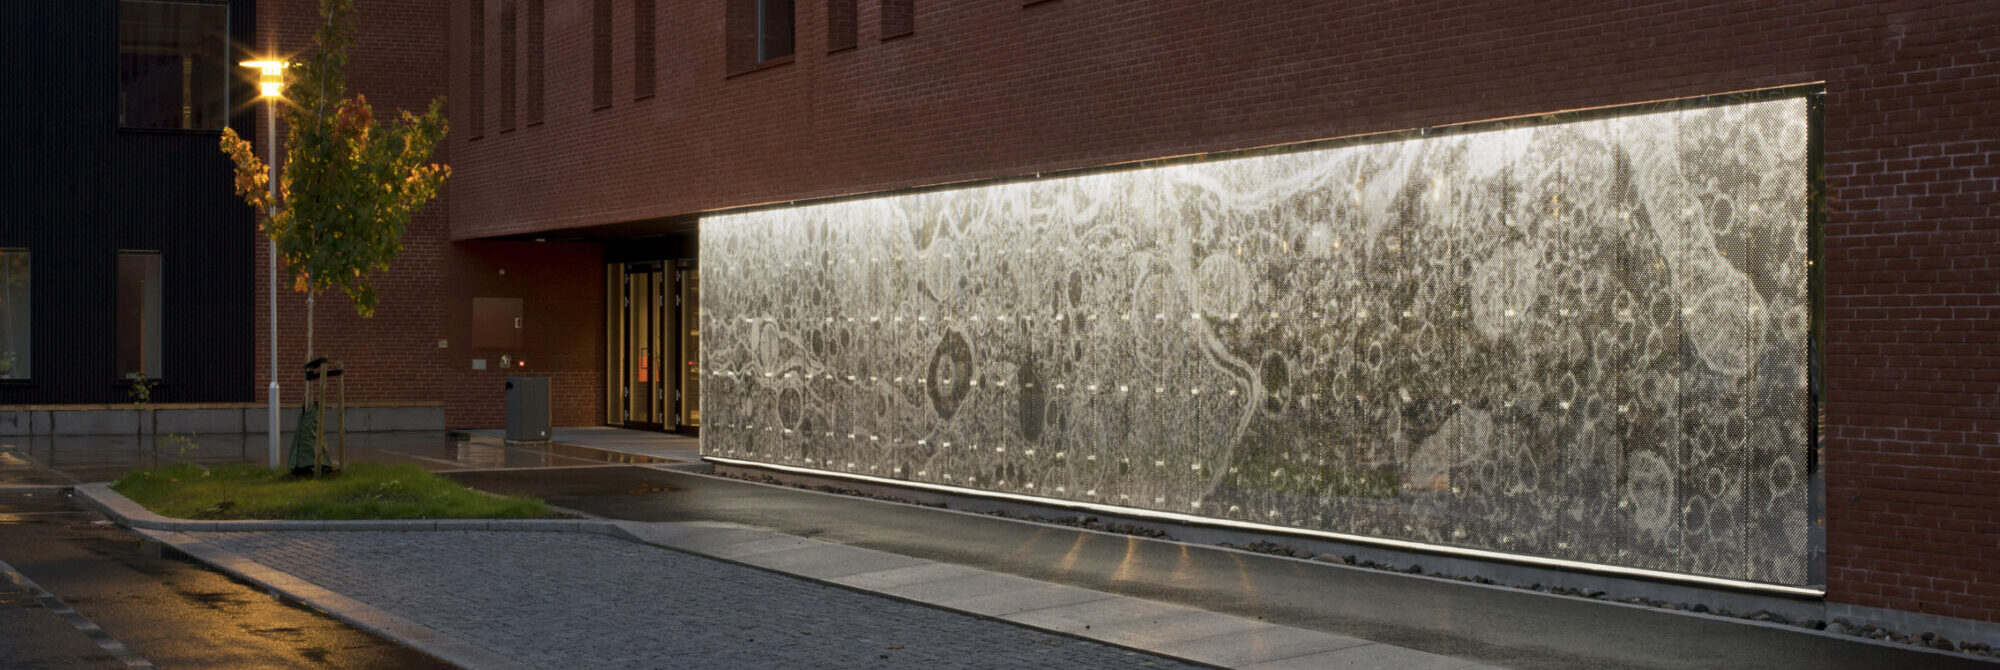 Bilde som viser kunstverk i stål langs en murvegg